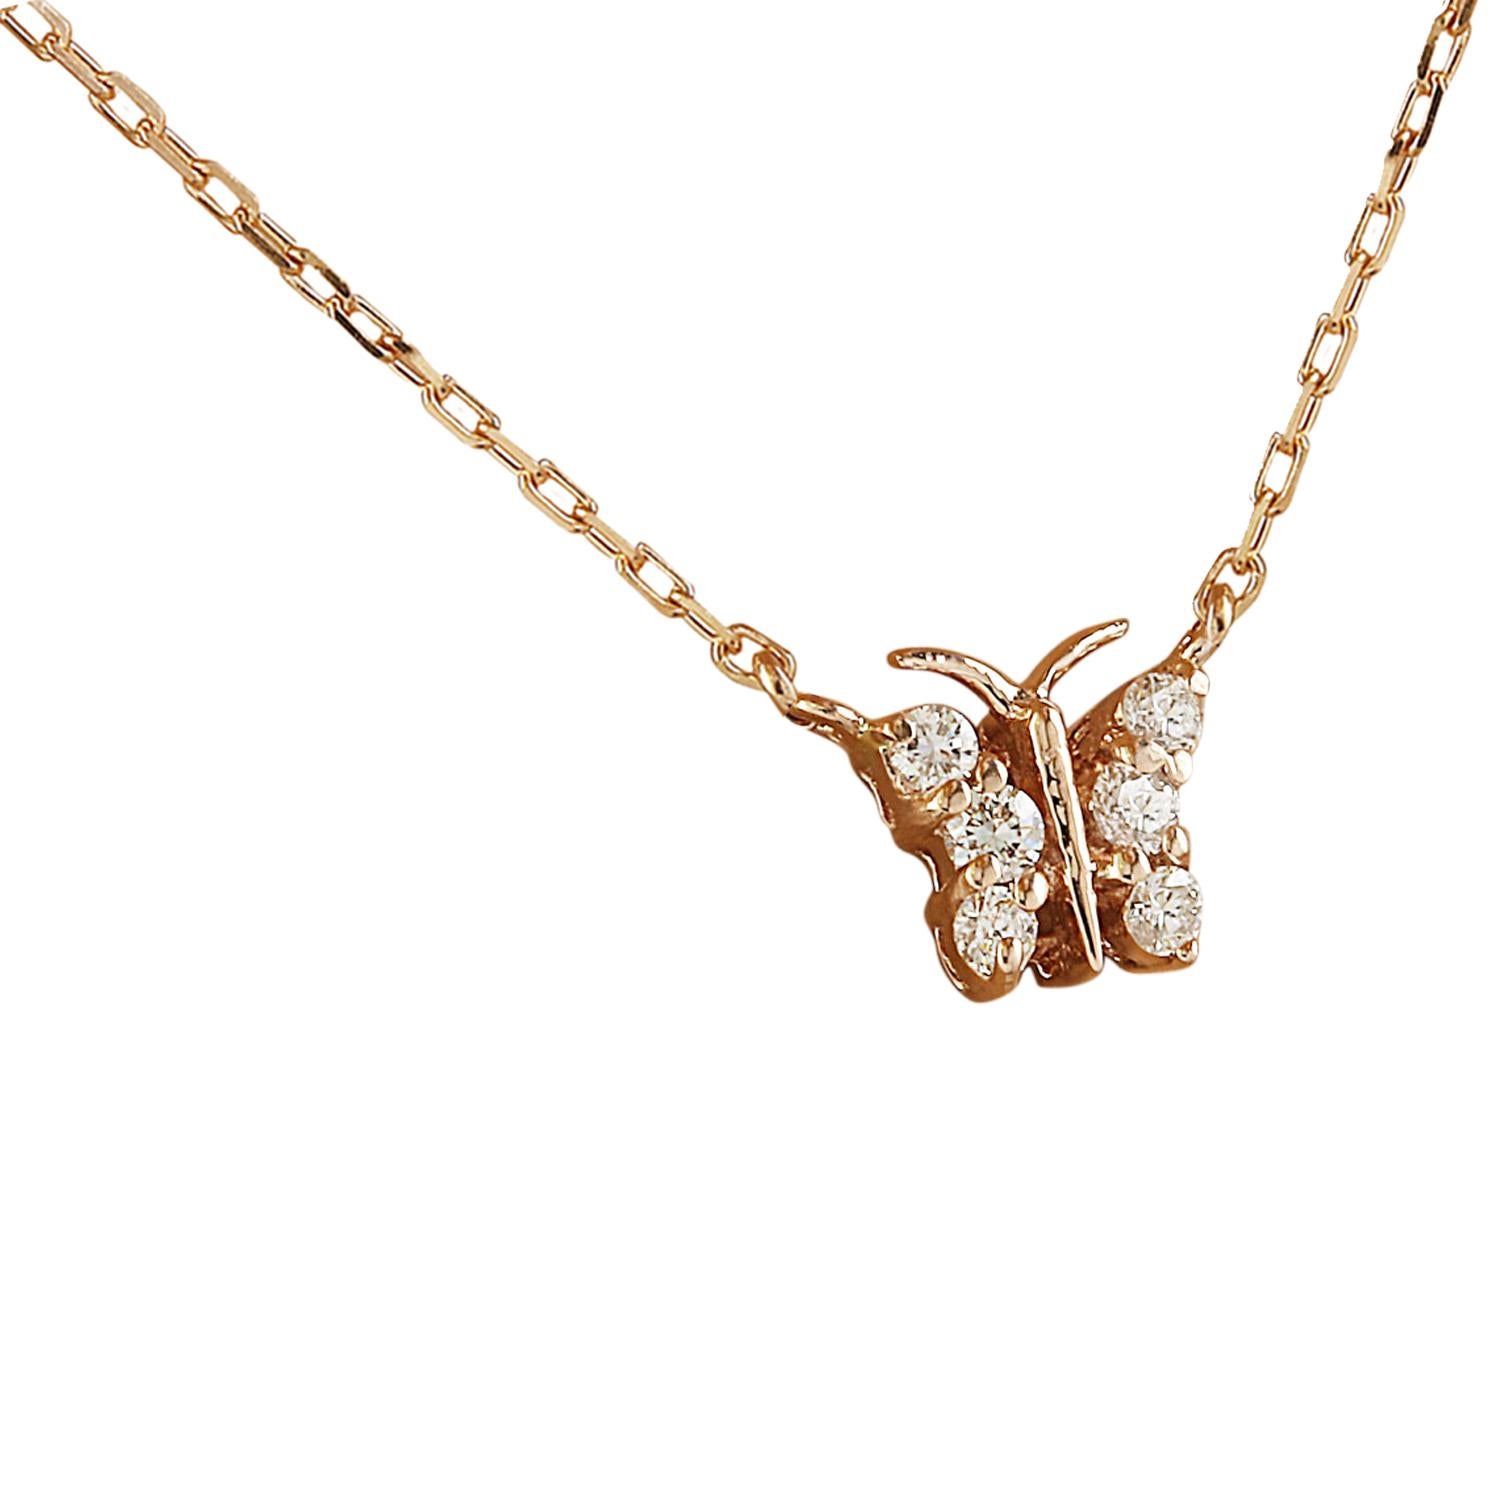 Voici notre ravissant collier papillon en diamant naturel de 0,20 carat, réalisé en or rose 14 carats. Chaque détail délicat de cette pièce reflète les normes les plus élevées en matière d'artisanat et d'élégance. Le collier est élégamment